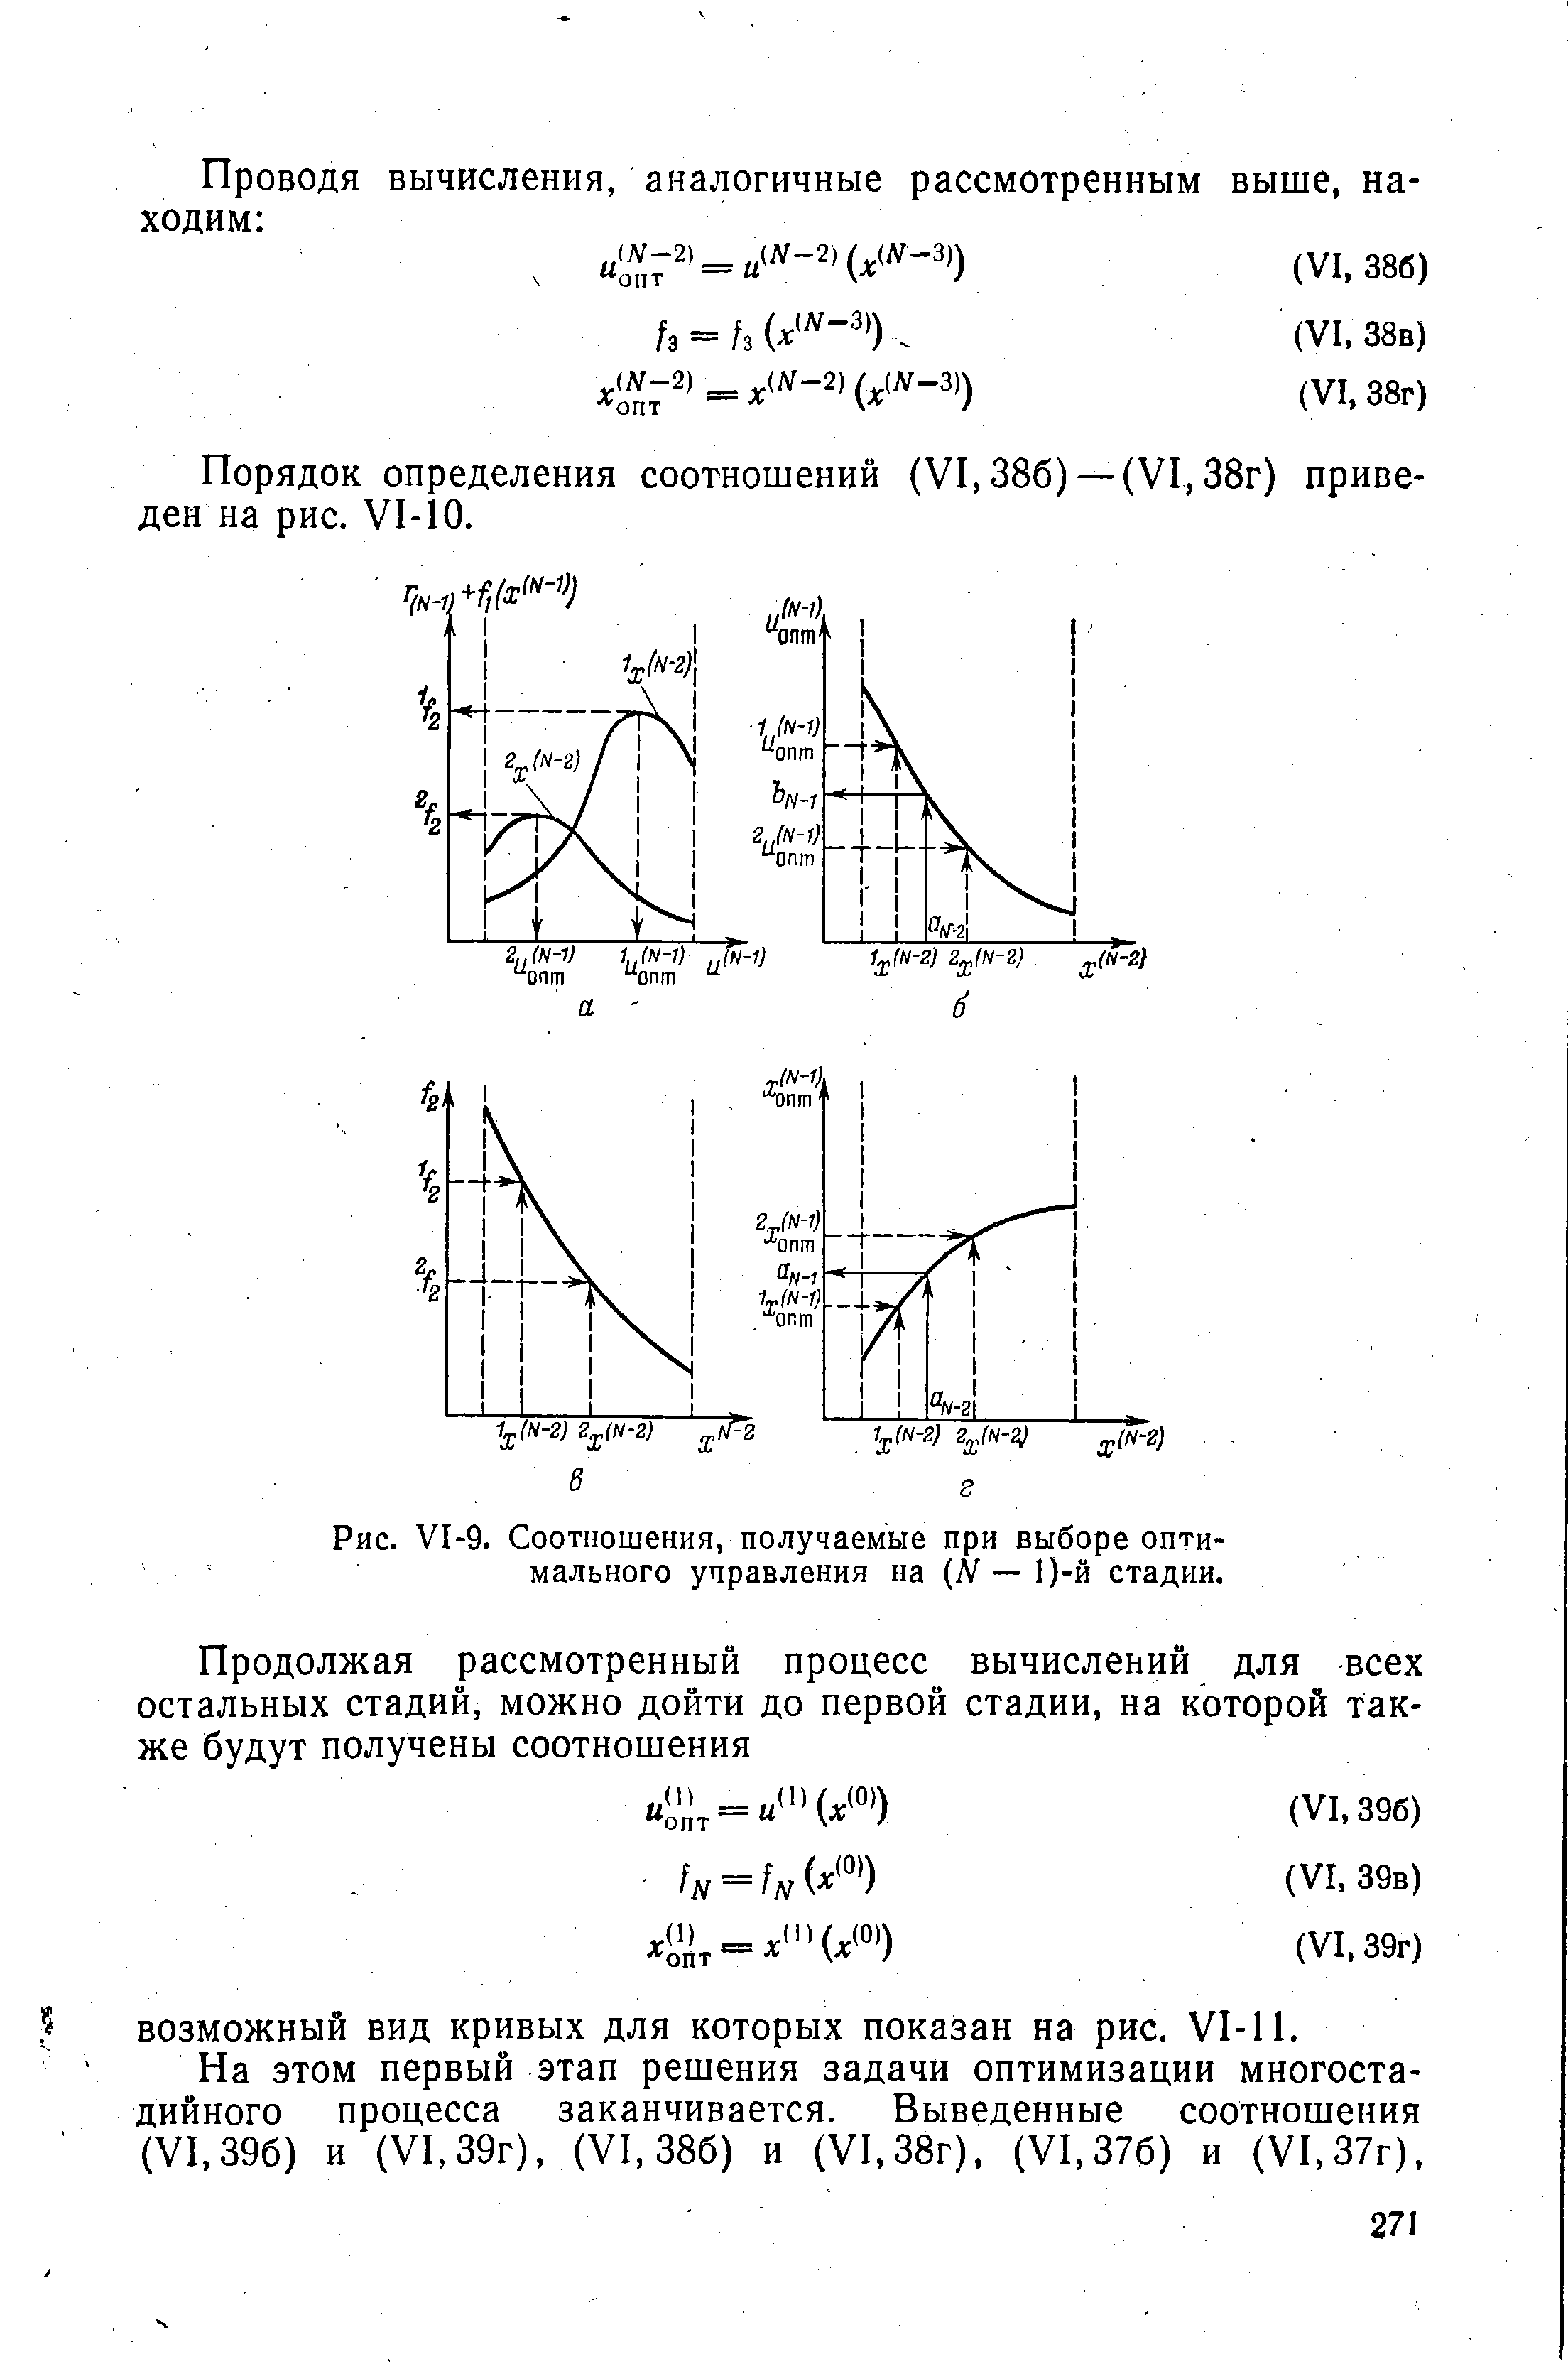 Порядок определения соотношений (VI, 386) — (VI, 38г) приведен на рис. VI-10.